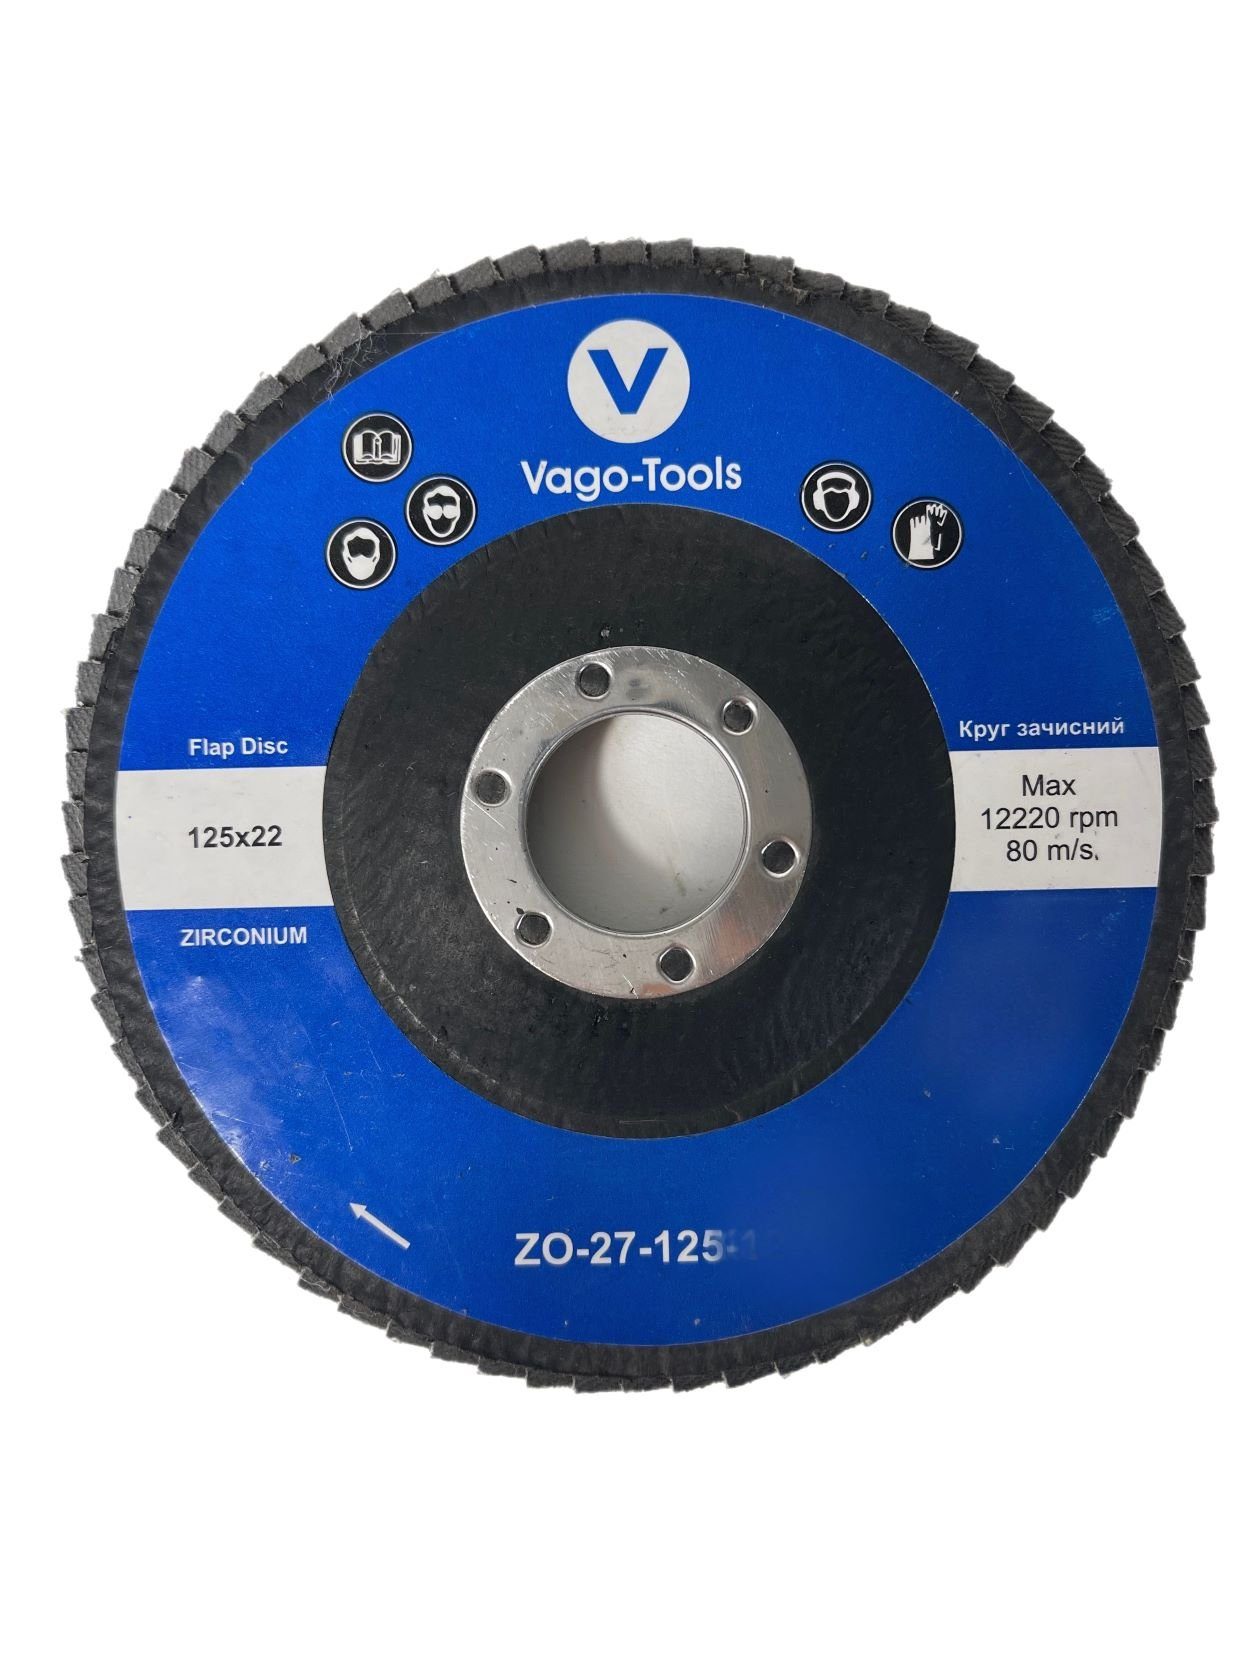 VaGo-Tools Schleifscheibe Fächerschleifscheiben 125mm P100 flach Blau 10x, (Packung)